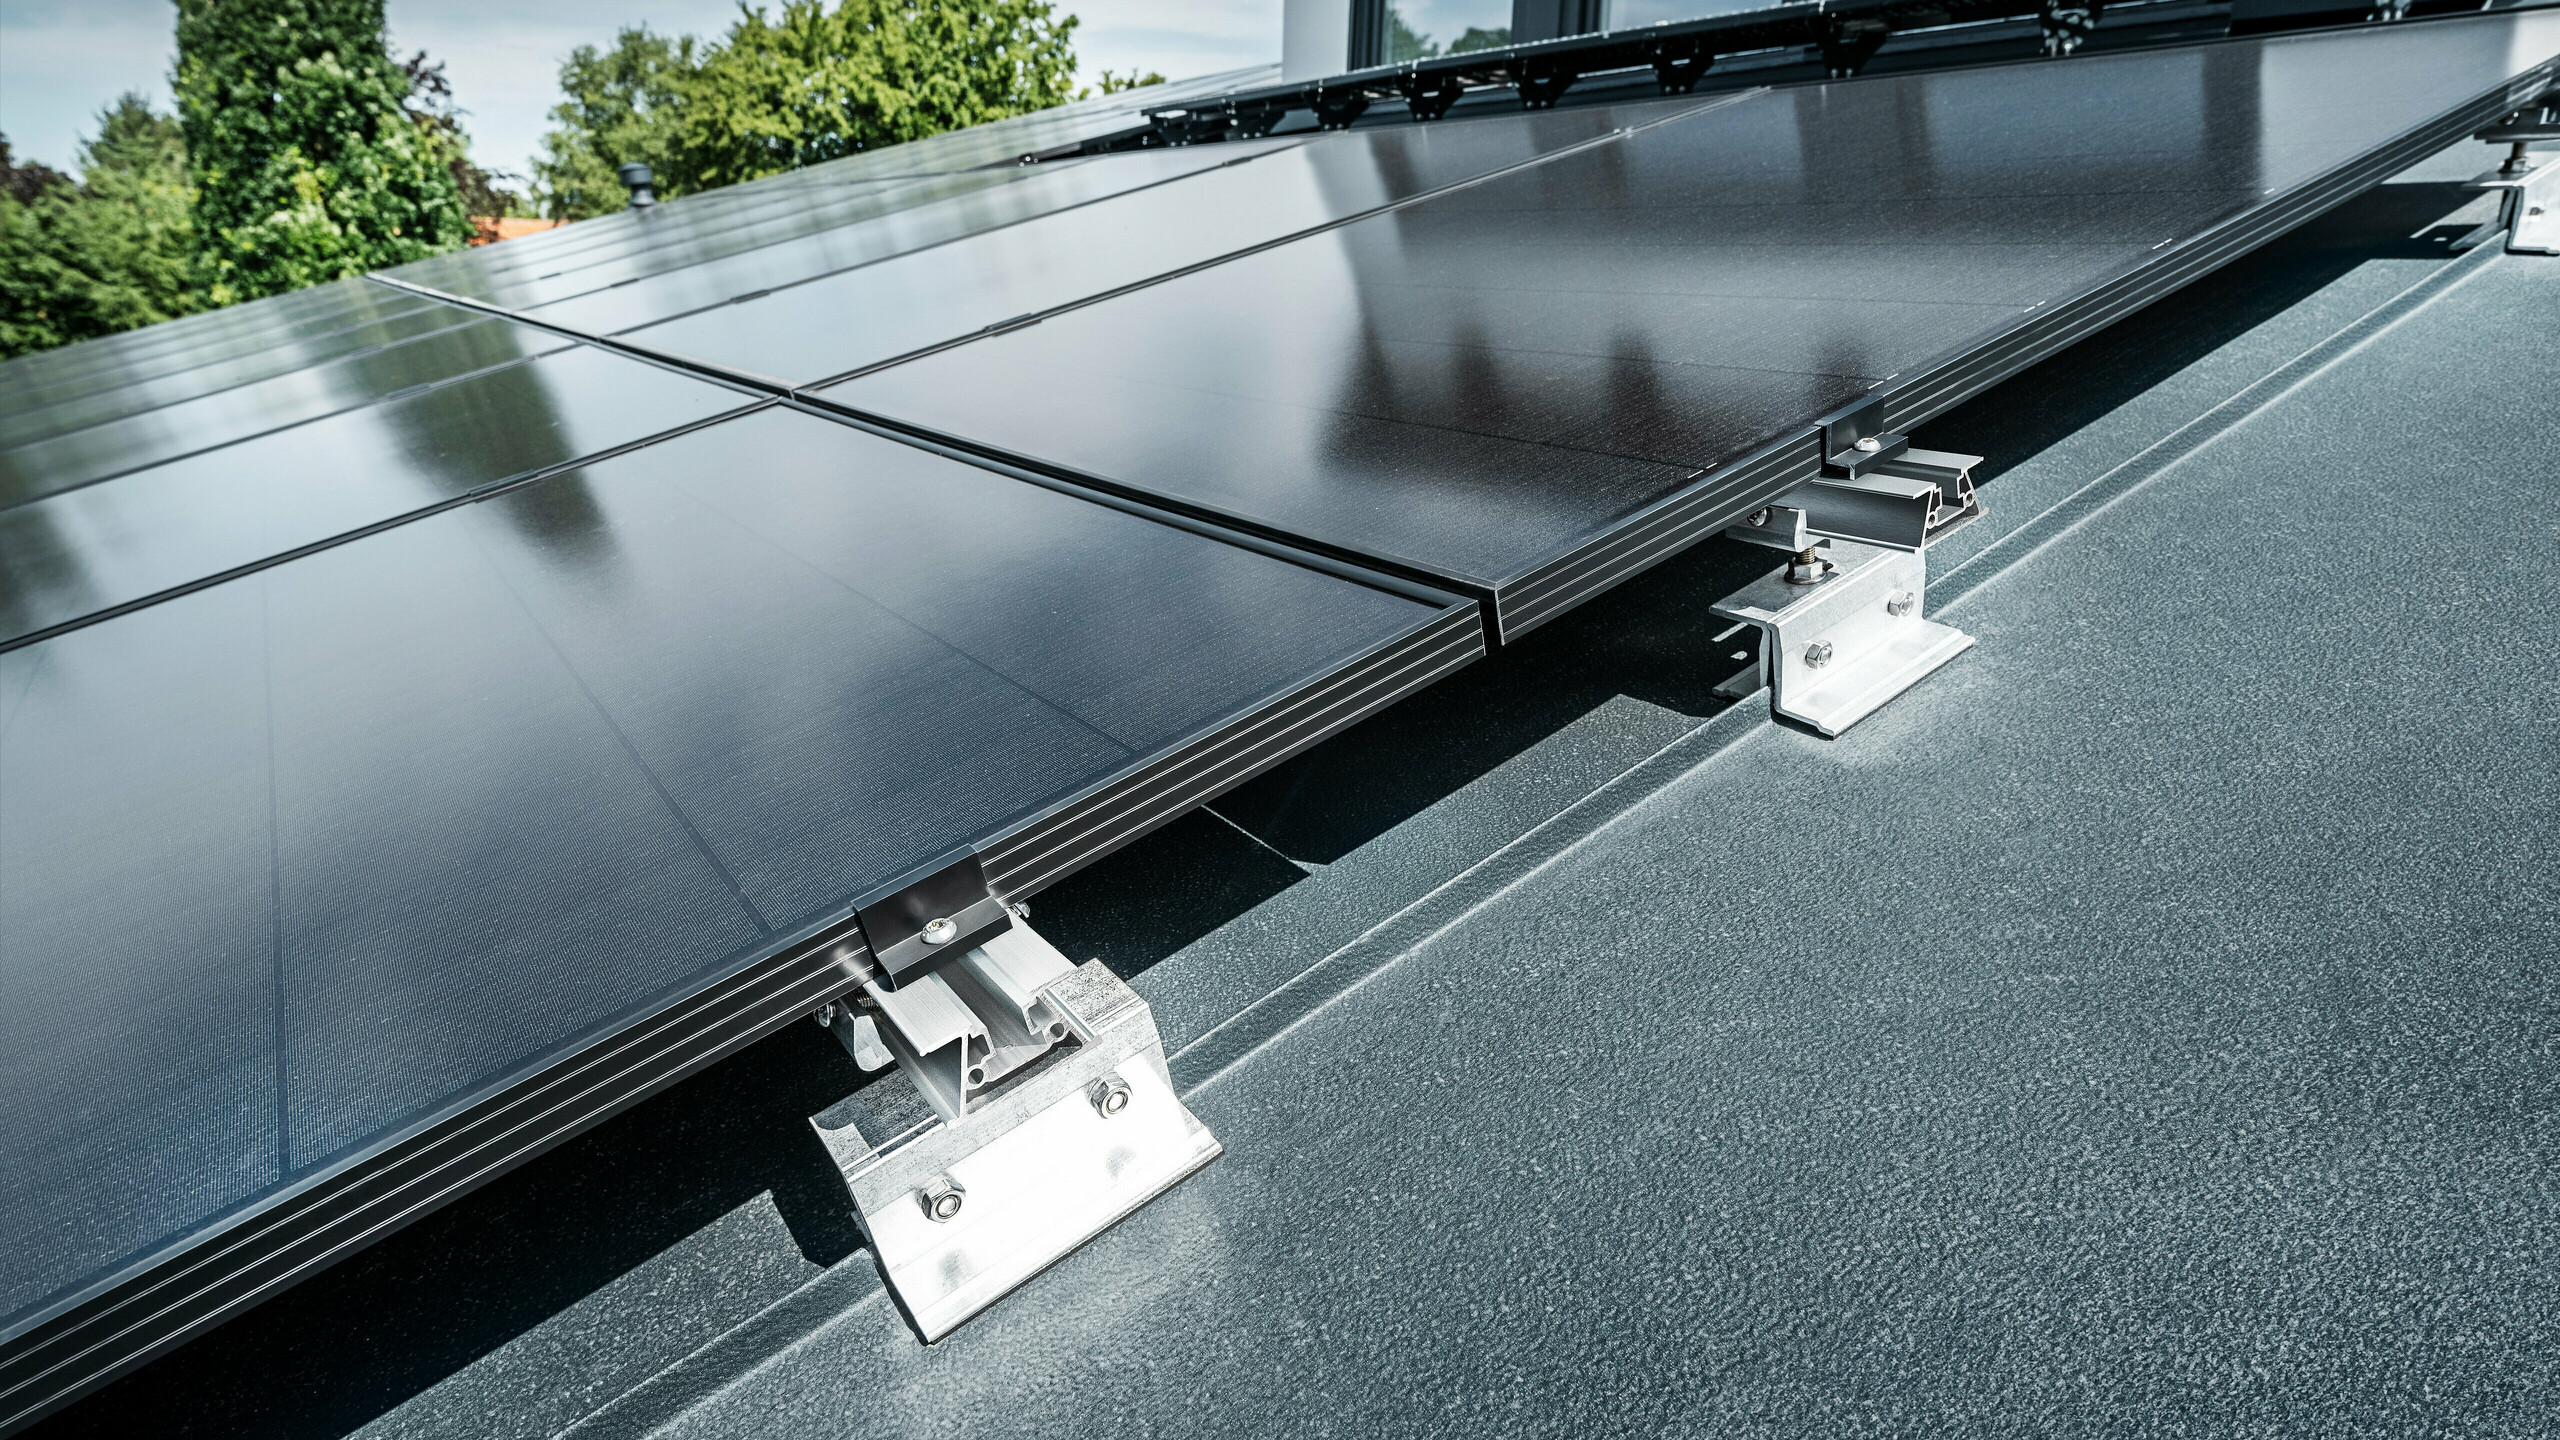 Držák solárních panelů PREFALZ Vario na střeše od PREFA v barvě P.10 antracitové